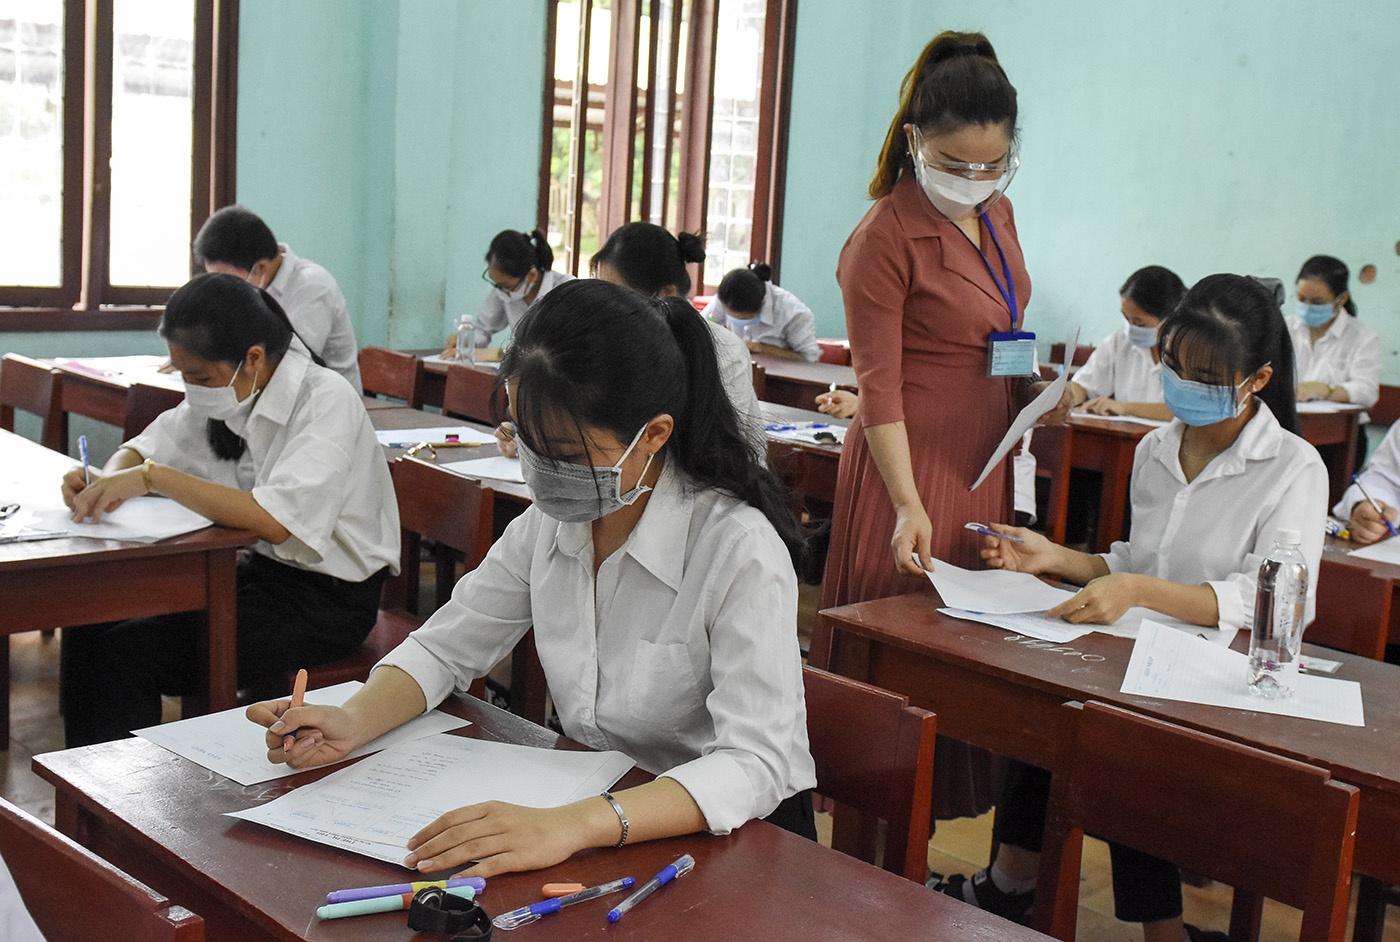 151 thí sinh ở Phú Yên nghi nhiễm Covid-19